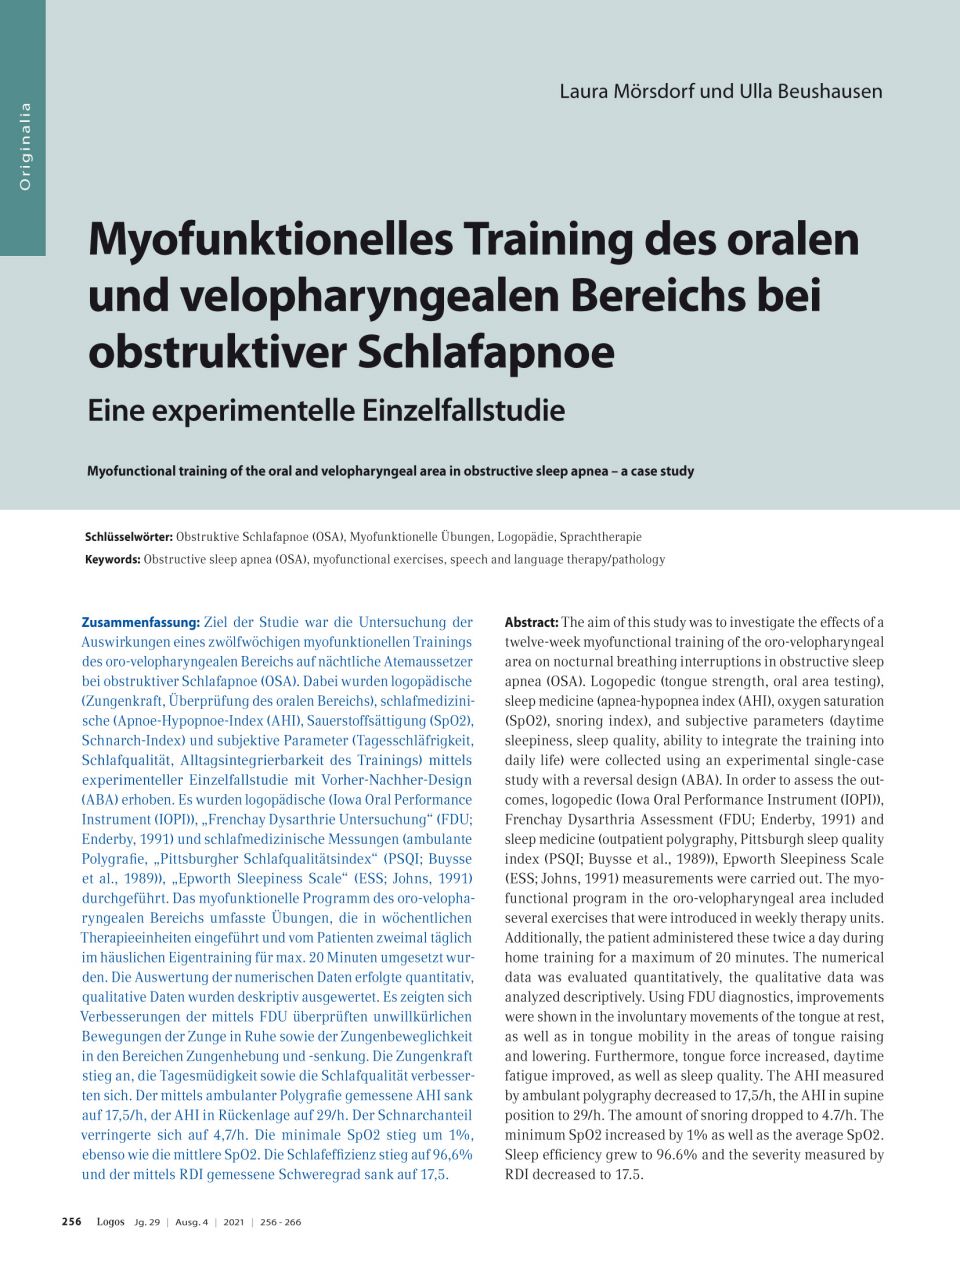 Myofunktionelles Training des oralen und velopharyngealen Bereichs bei obstruktiver Schlafapnoe – eine experimentelle Einzelfallstudie